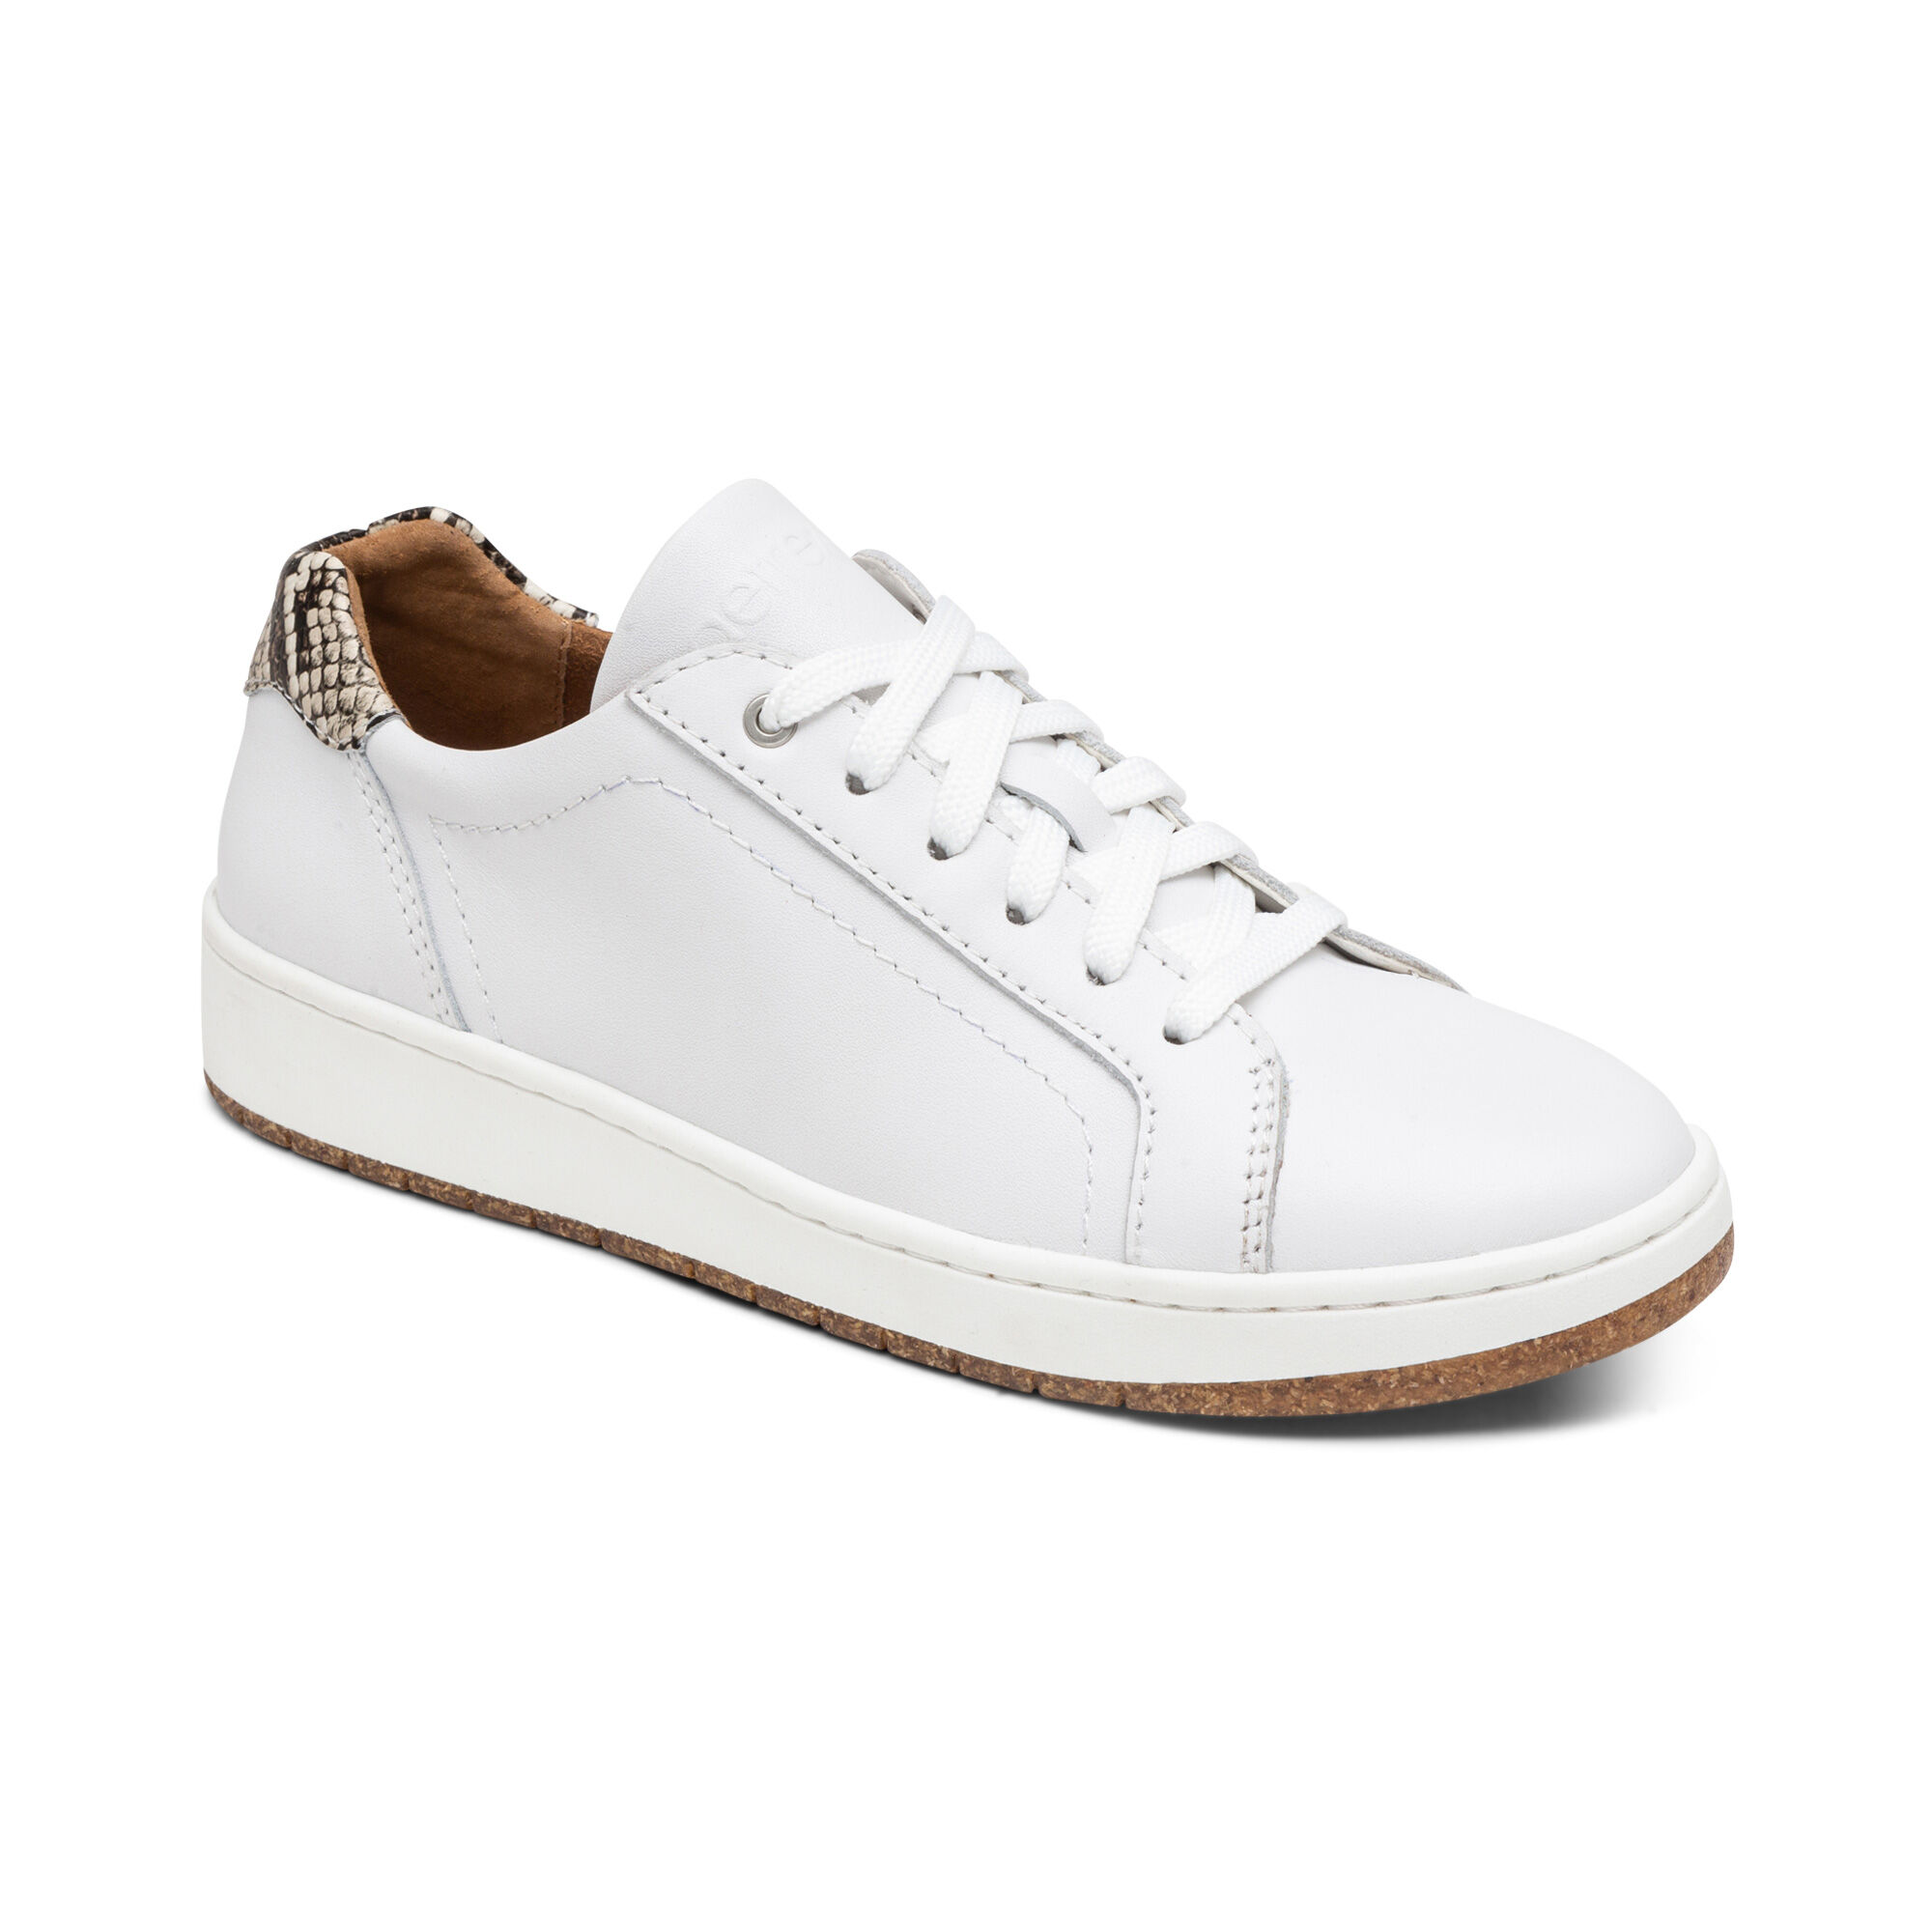 White Sneakers - Bow Sneakers - Flatform Sneakers - Sneakers - Lulus